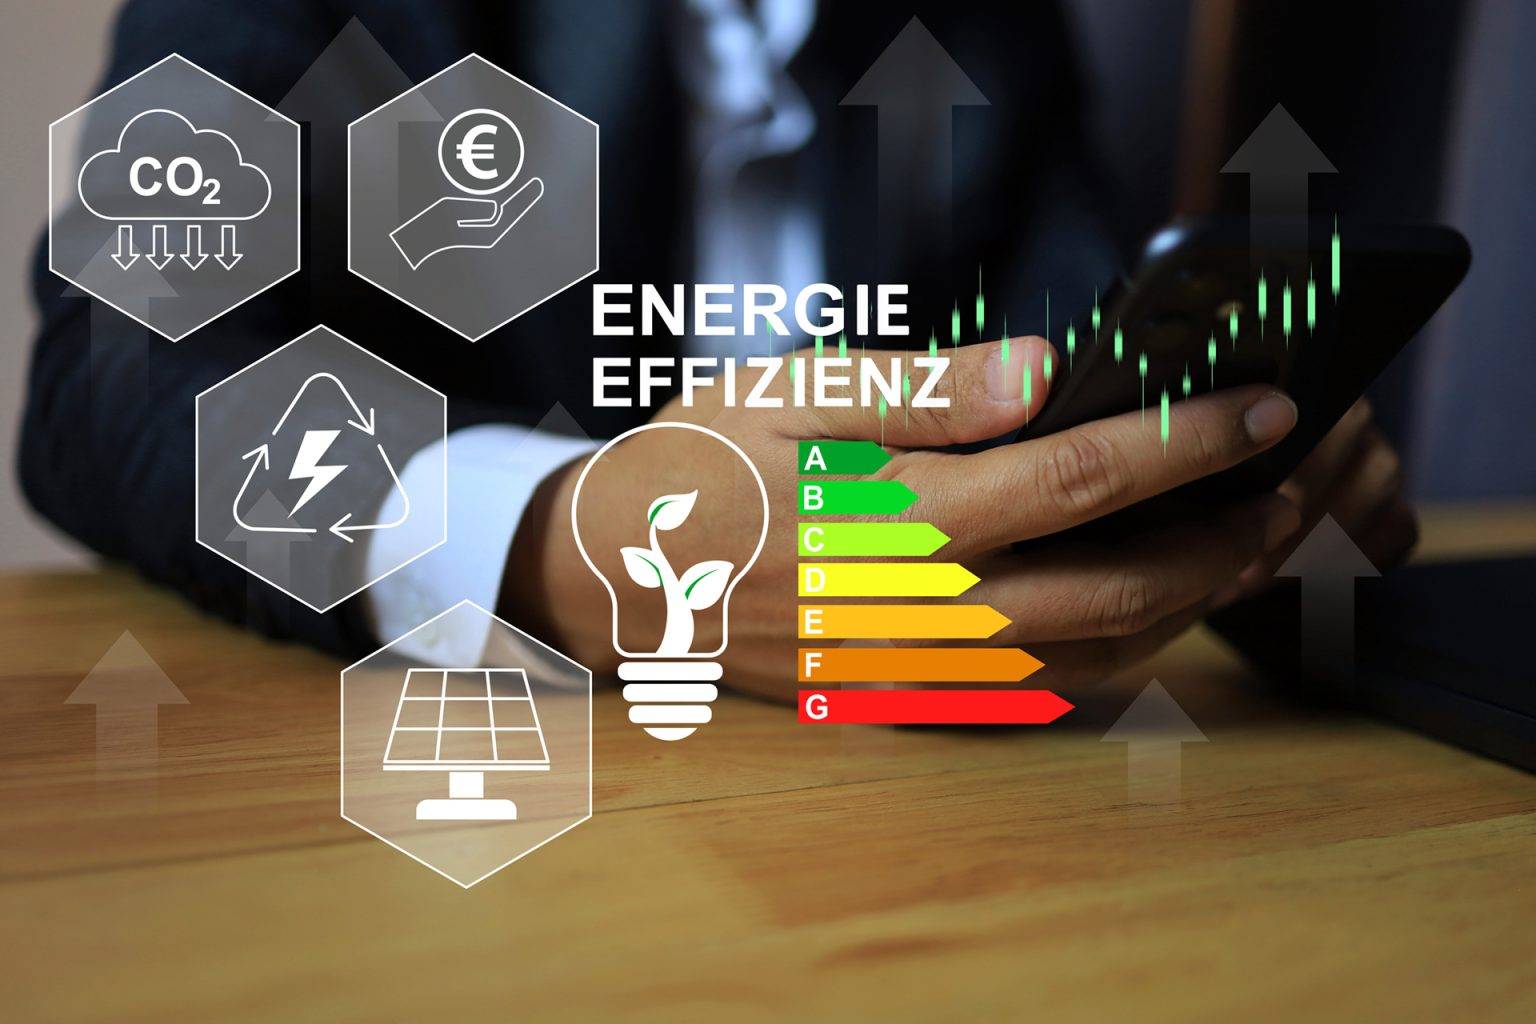 Energieskala und diverse Icons zur Darstellung der Energieeffizienz von Immobilien